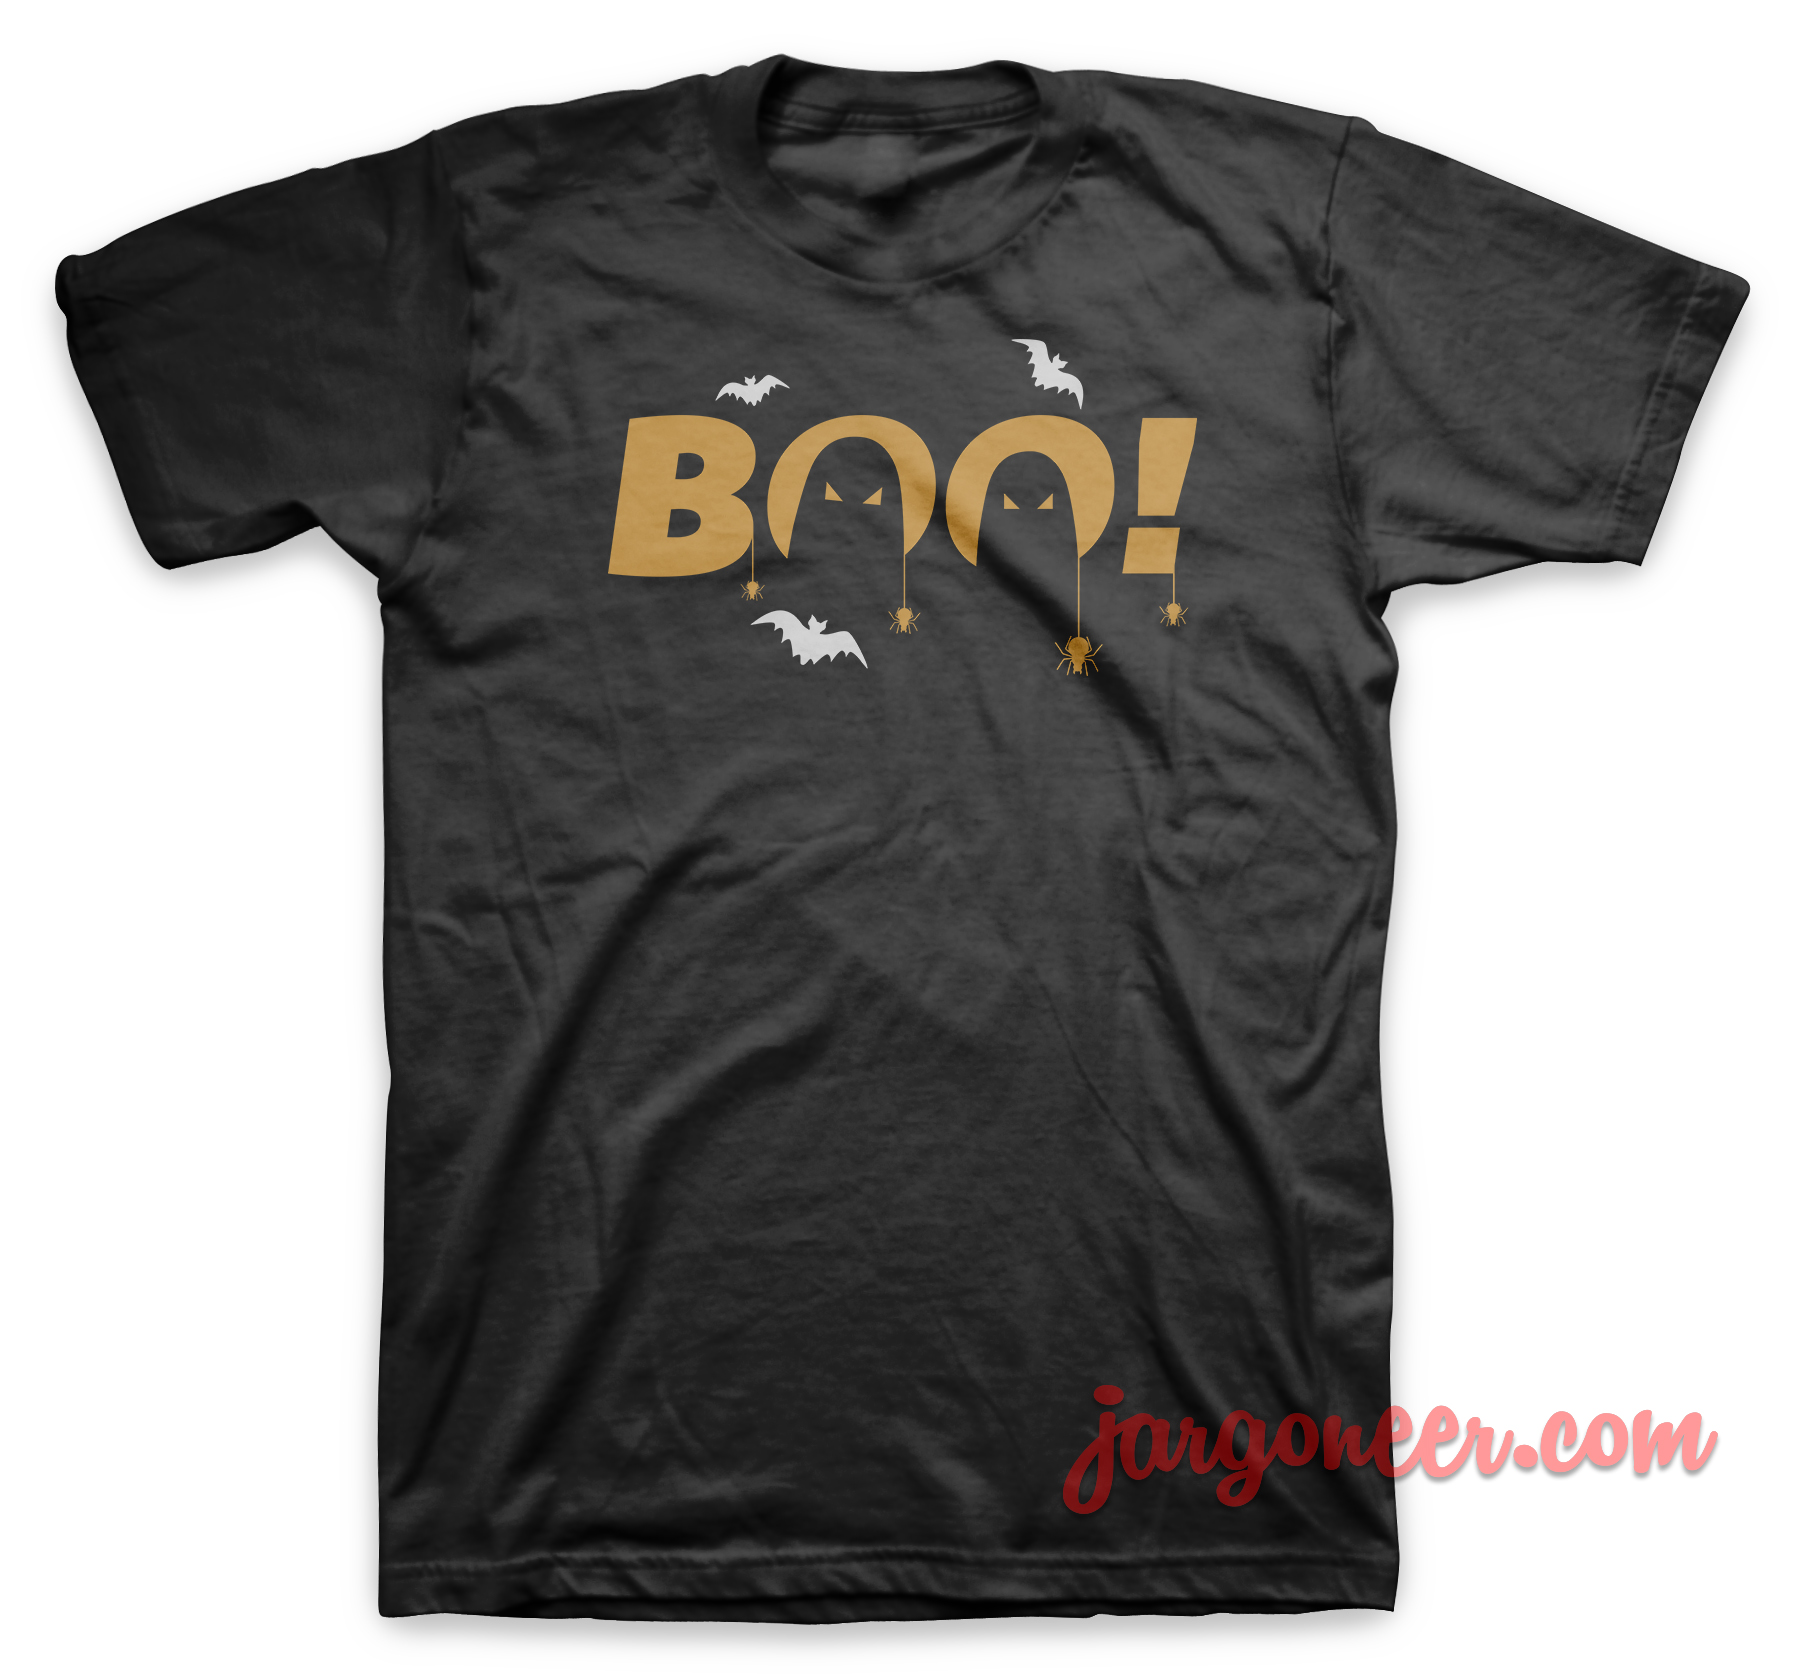 Boo Black T Shirt - Shop Unique Graphic Cool Shirt Designs